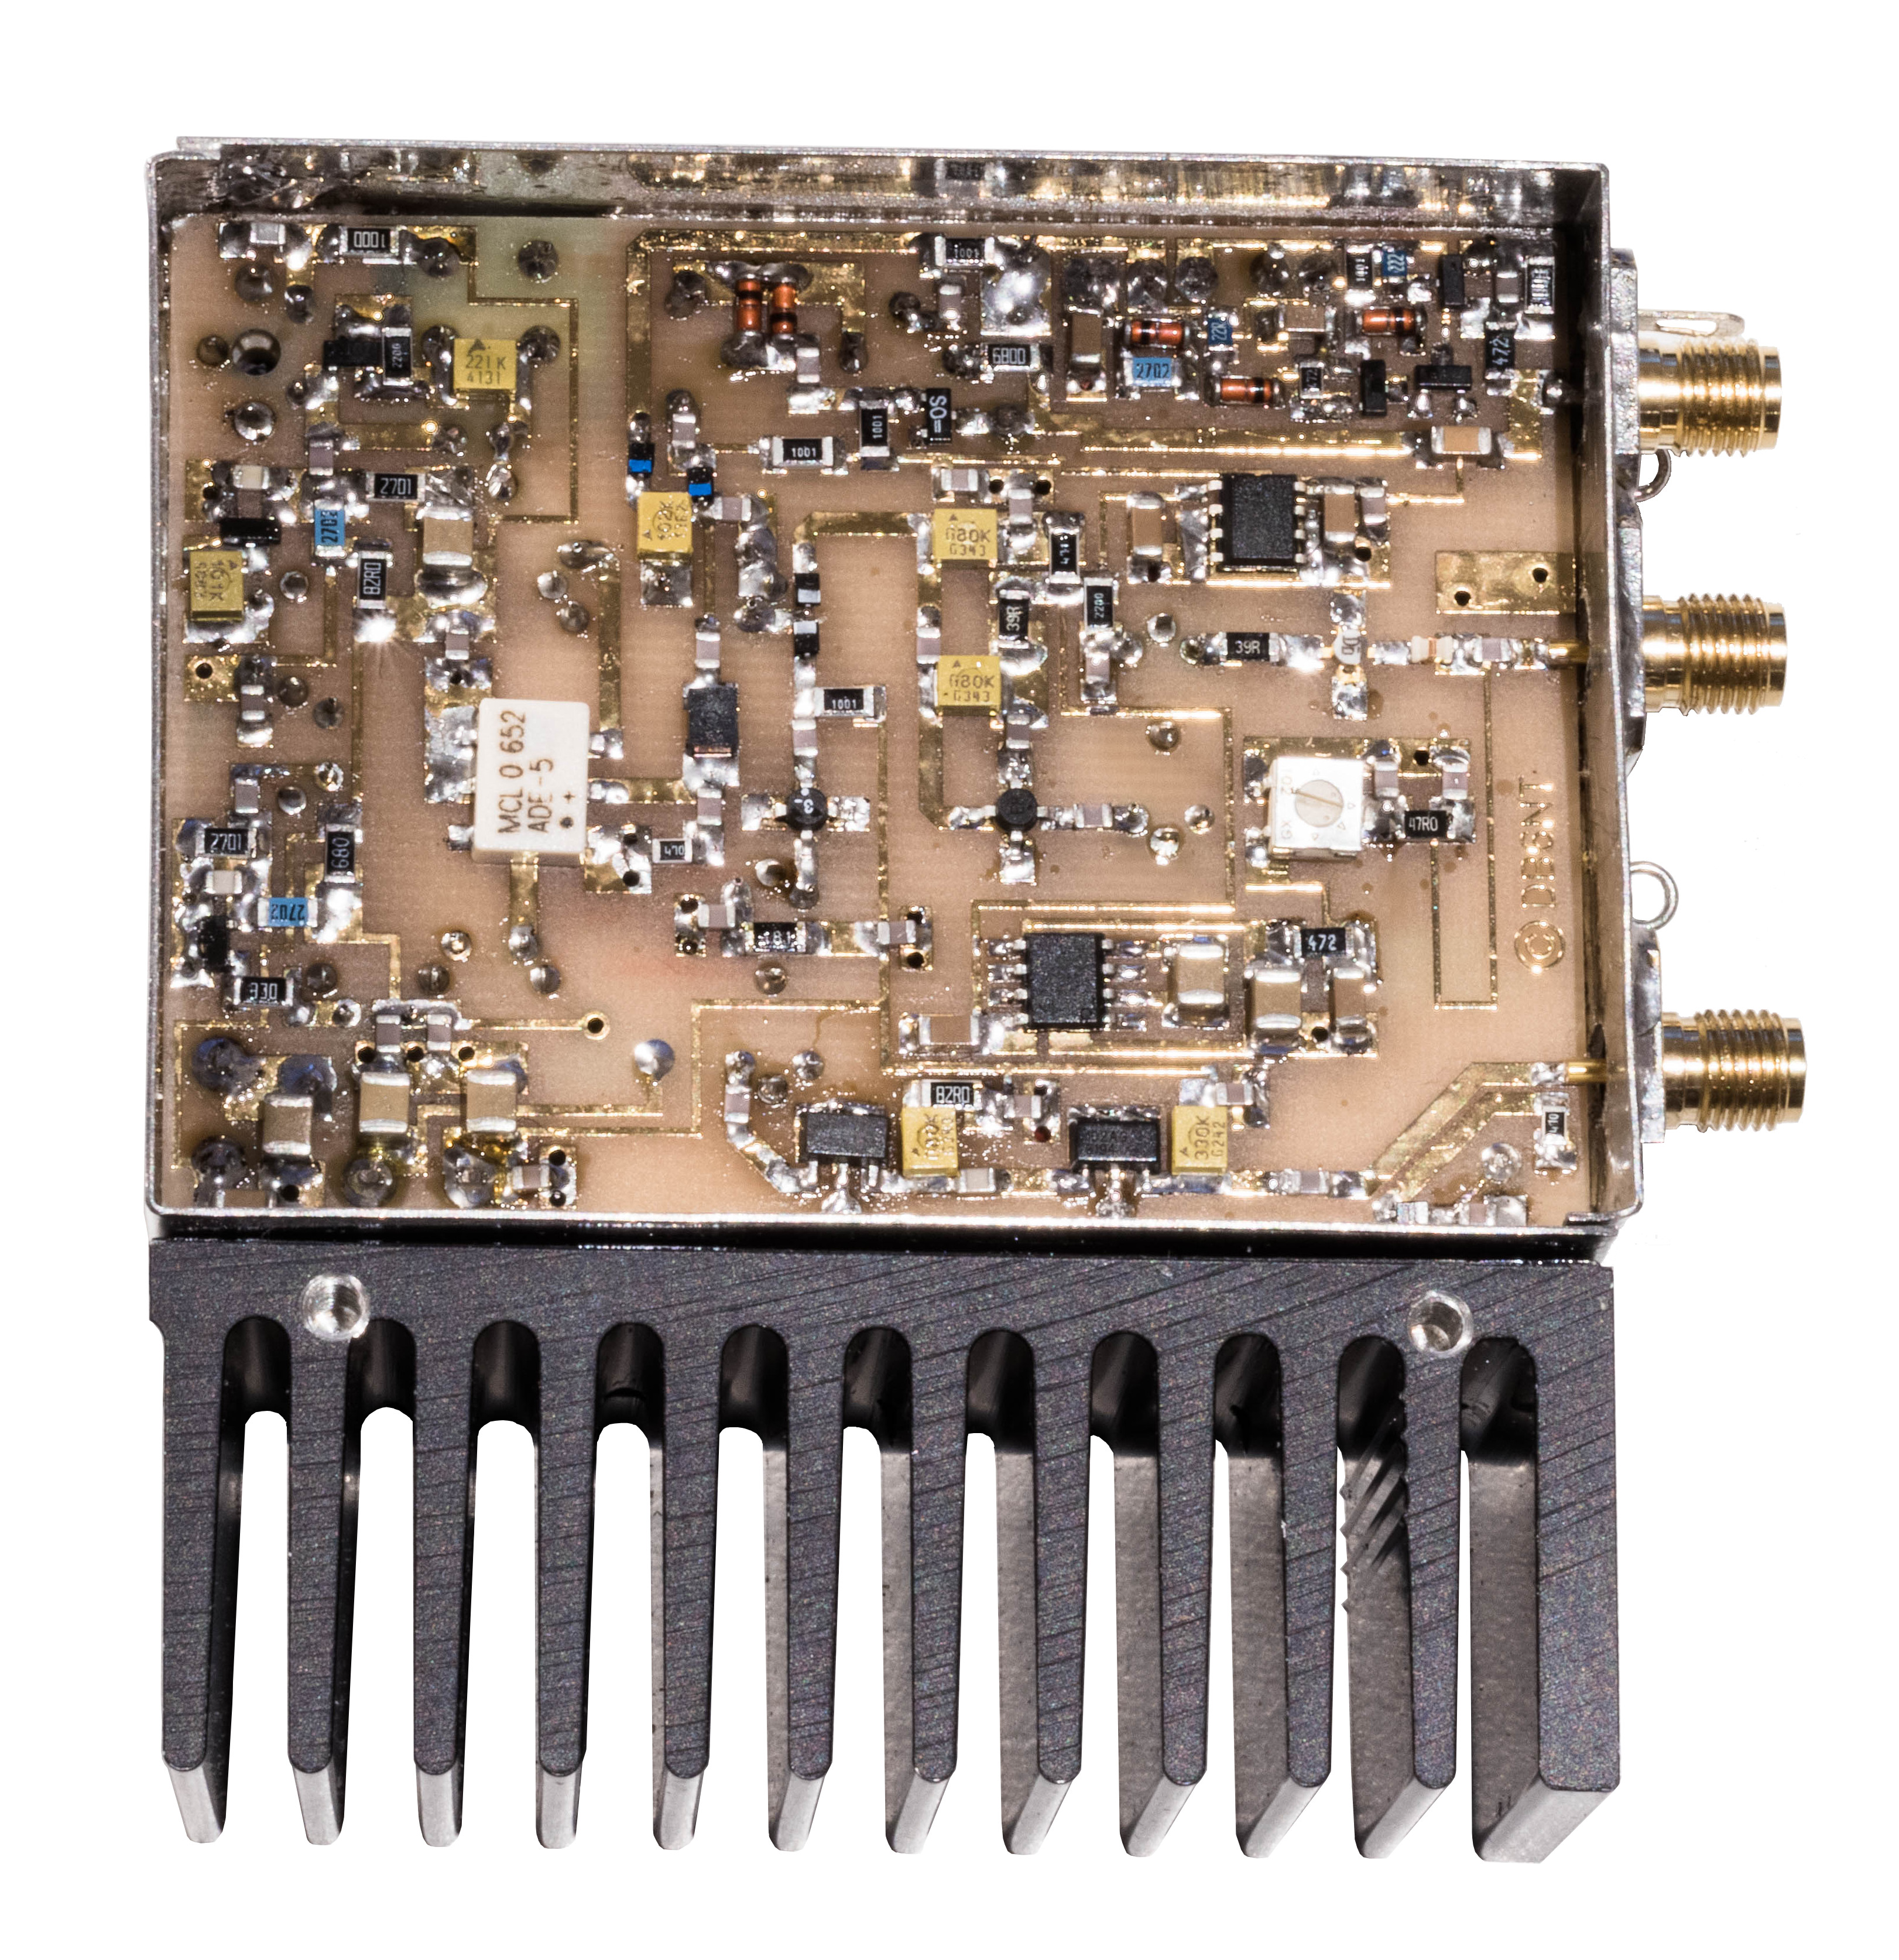 23 cm Transverter (28 MHz) - DB6NT KIT